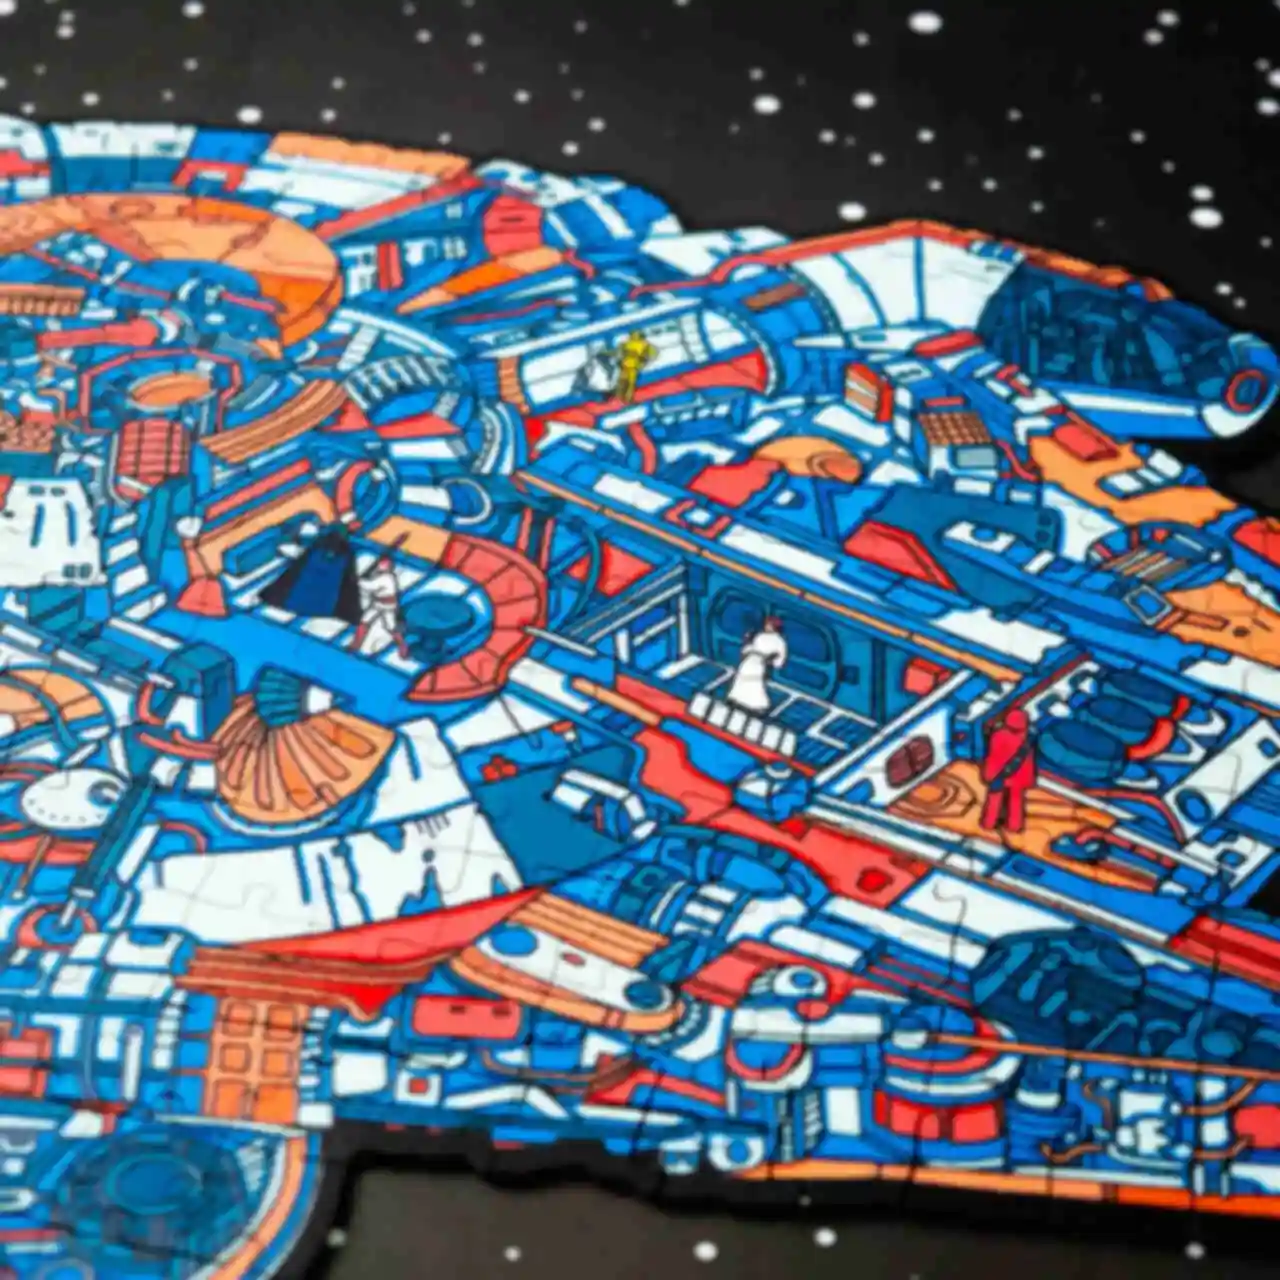 Пазлы • Тысячелетний сокол • Сувениры и атрибутика по Звездным войнам • Подарки в стиле фильма Star Wars. Фото №12